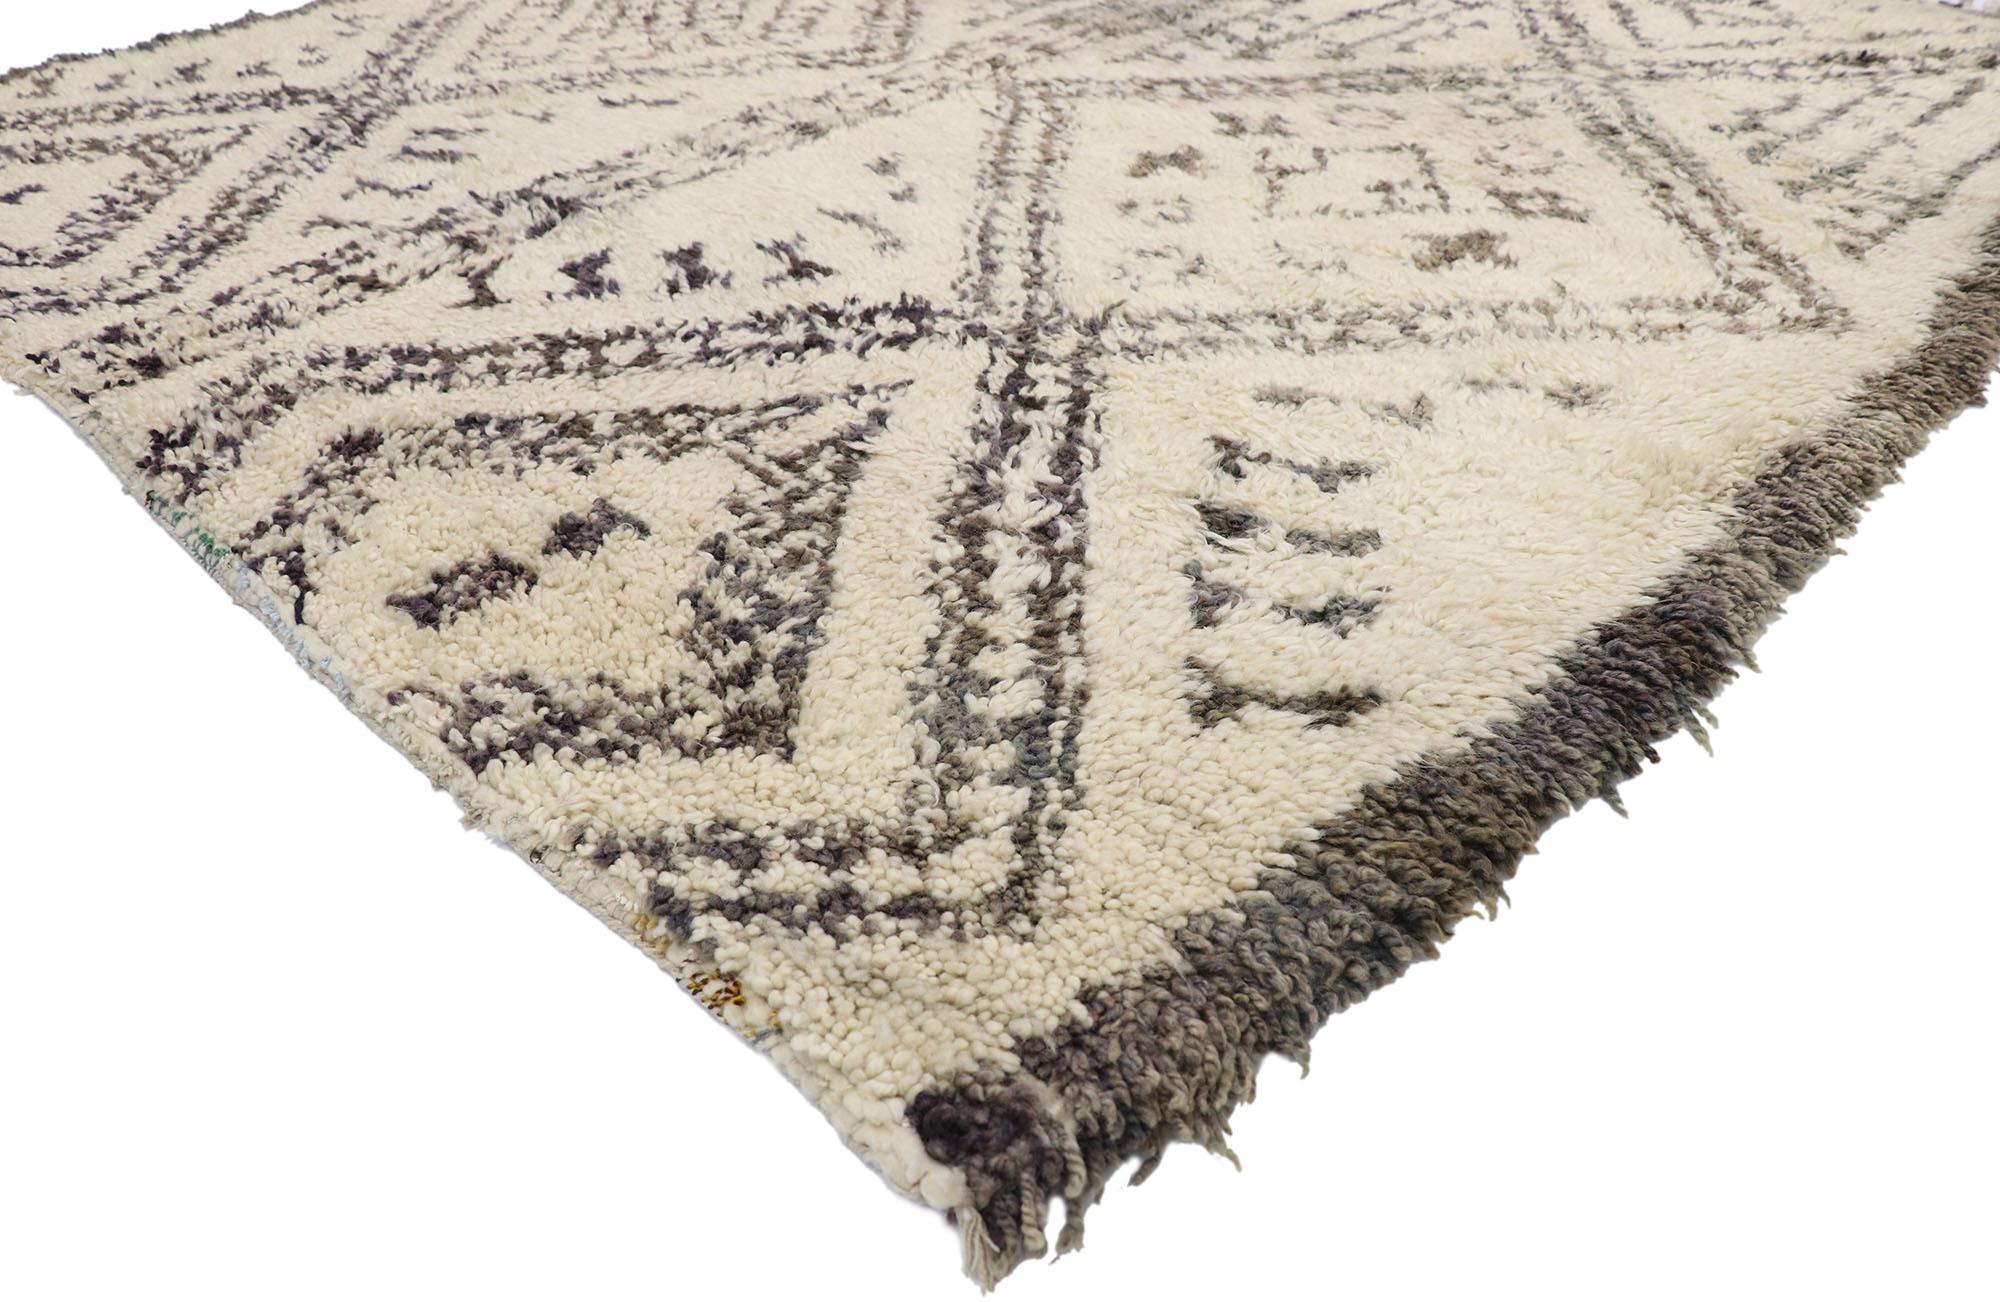 20978 Vintage Beni M'Guild Marokkanischer Teppich mit organischem, modernem Stil, Quadratischer Marokkanischer Teppich 06'08 x 06'08. Dieser handgeknüpfte marokkanische Beni M'Guild-Teppich aus Wolle zeigt zwei vertikale Säulen, die aus